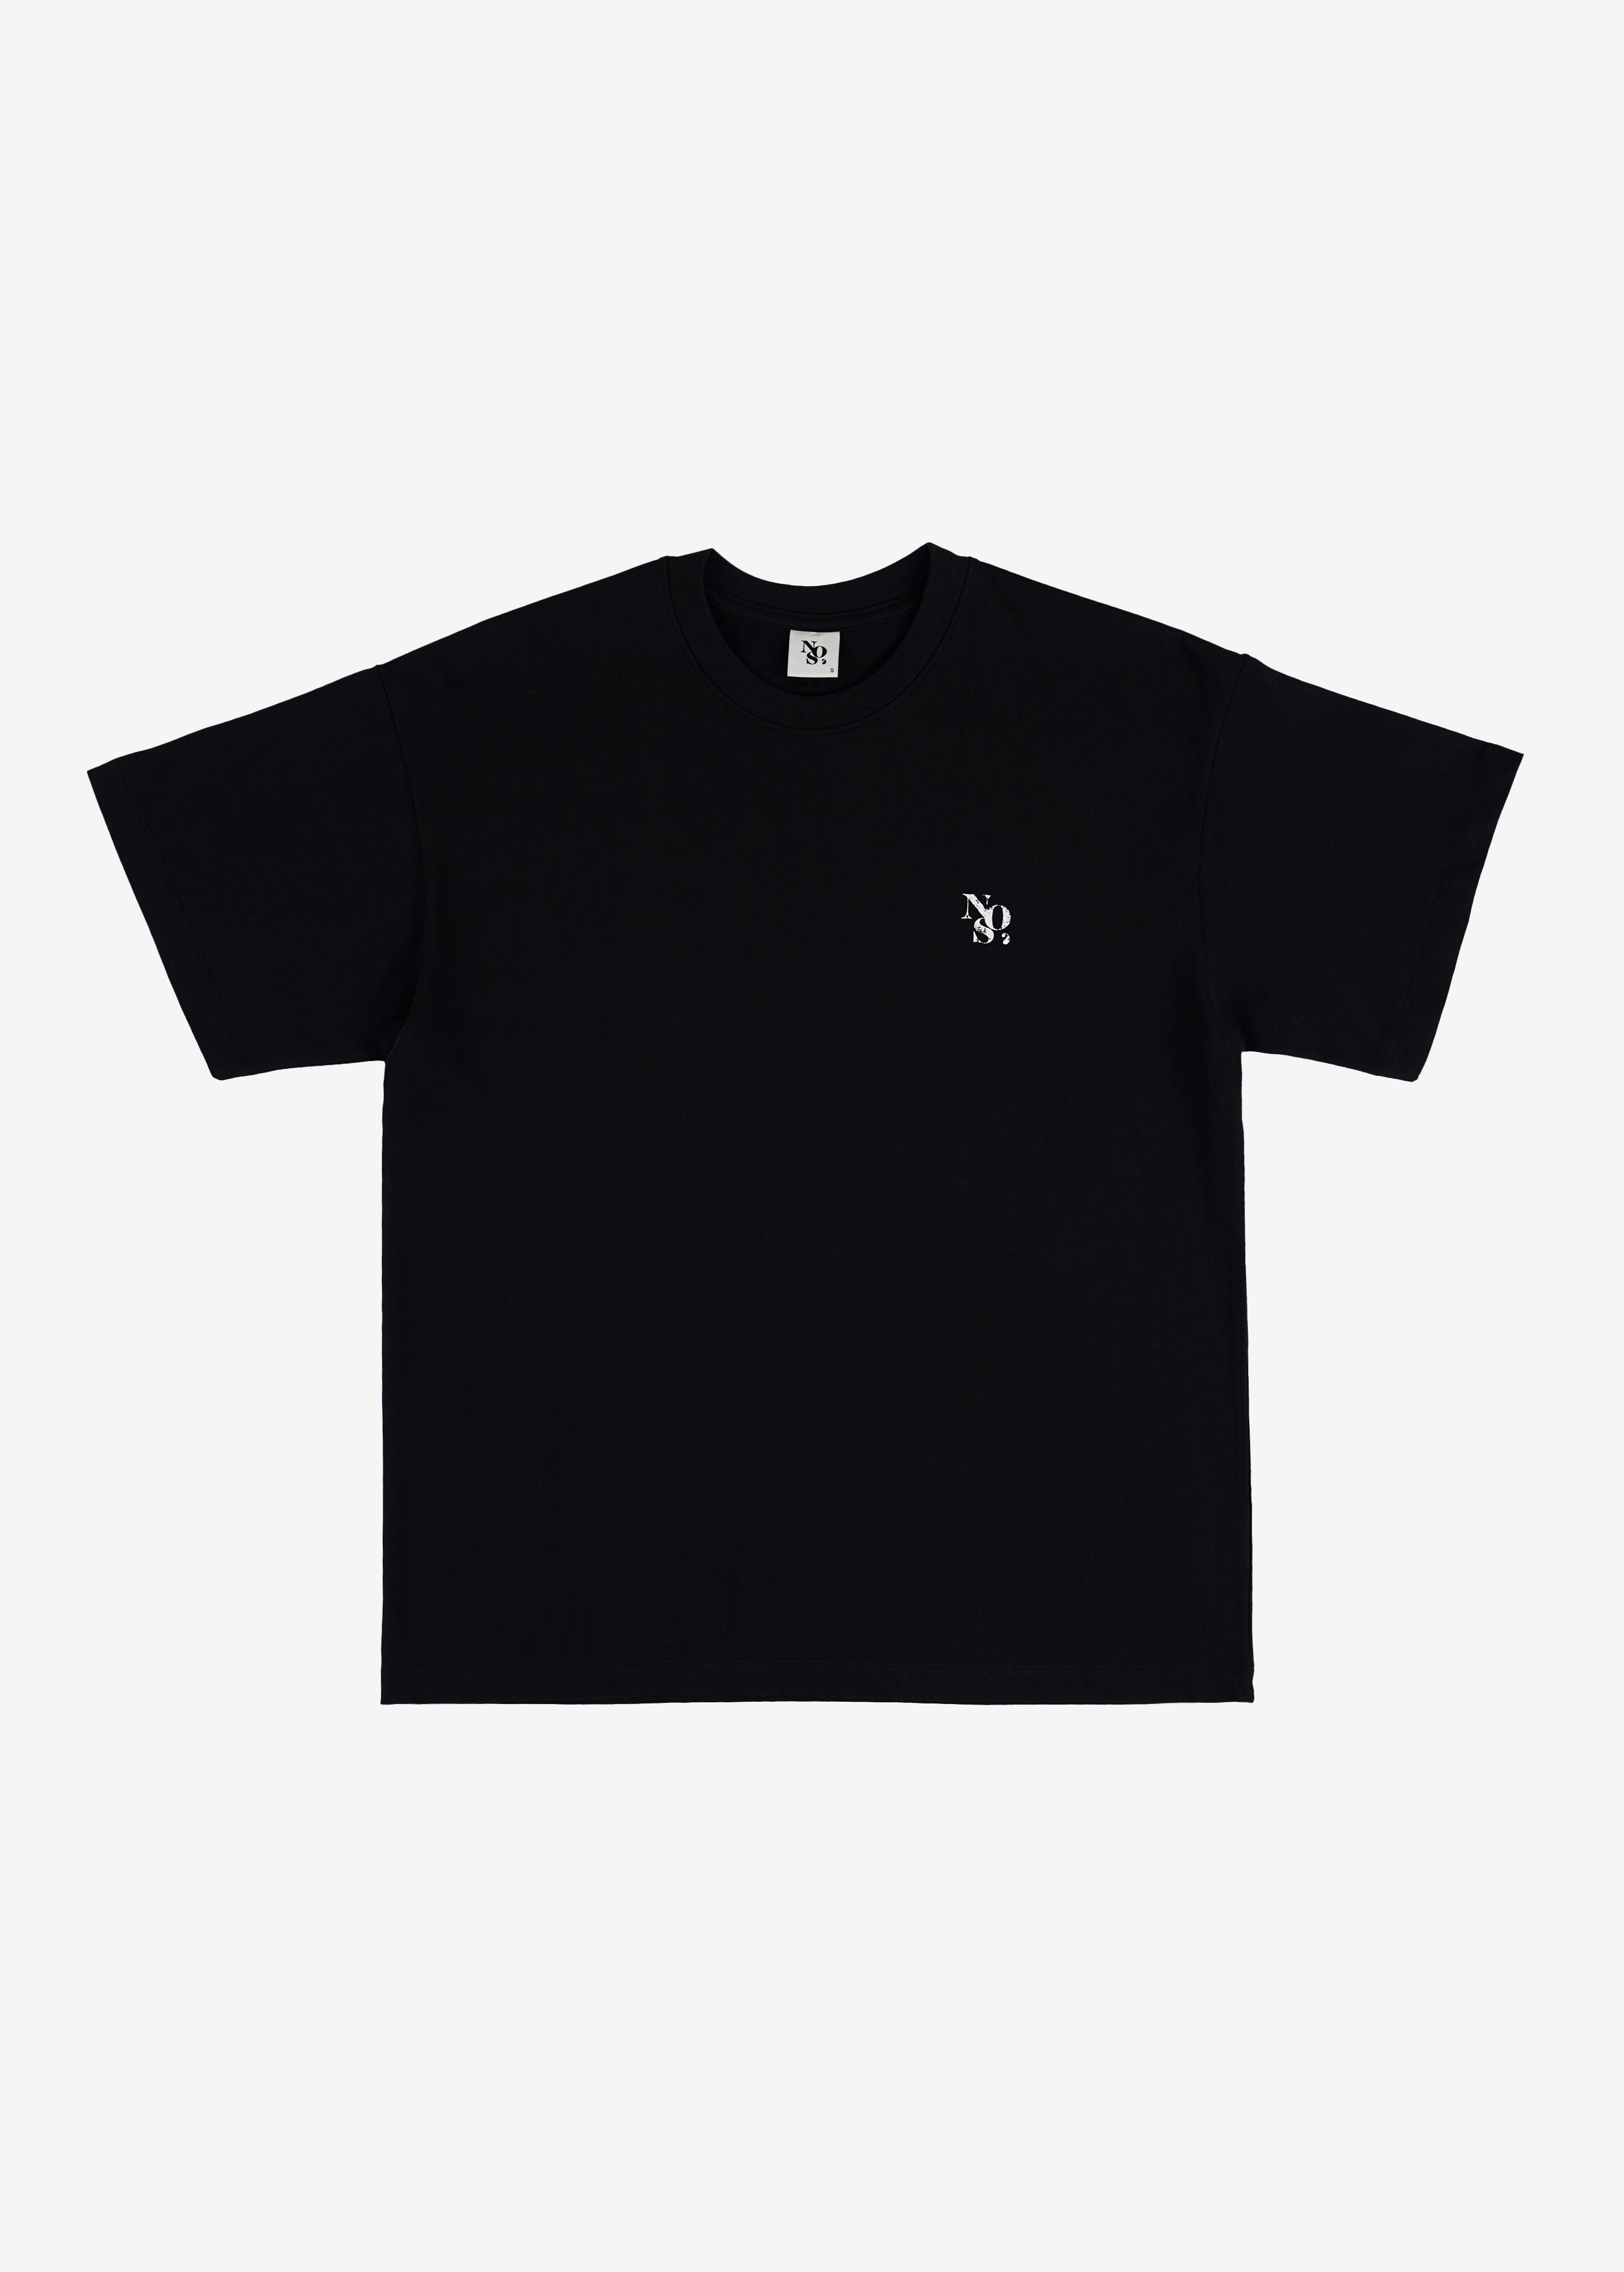 NOS7 스크레치 로고 티셔츠 - 블랙